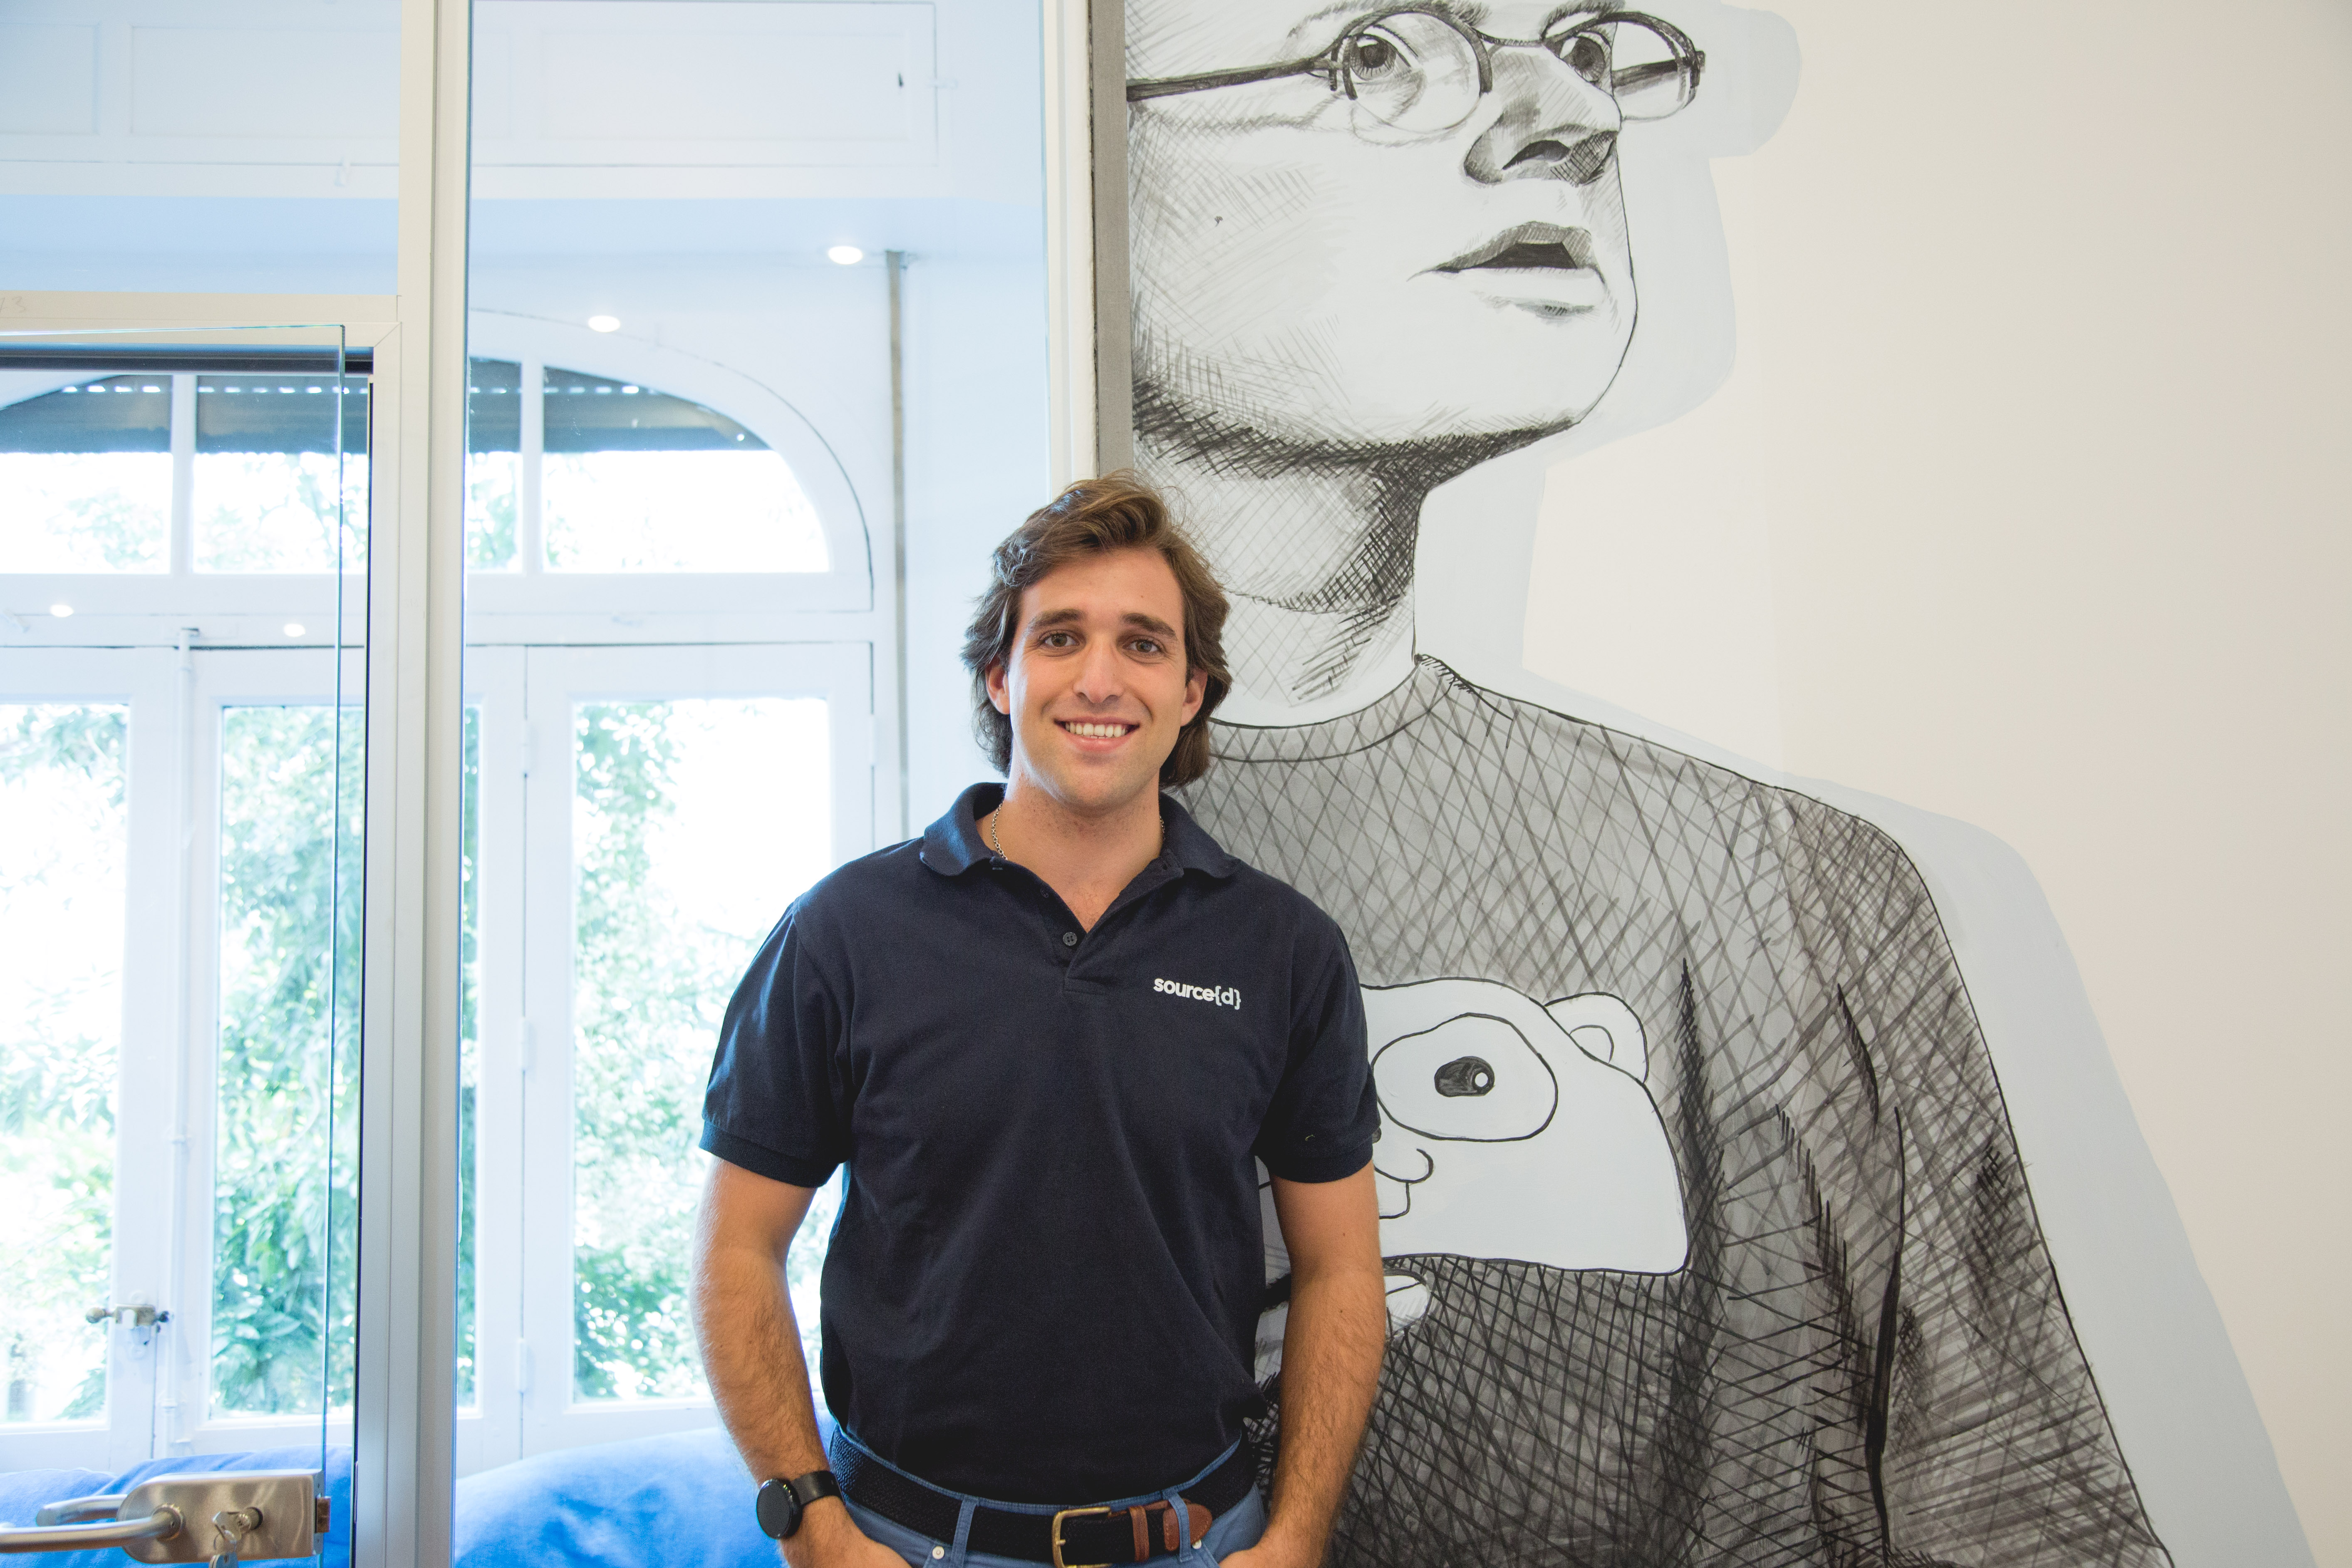 Entrevistamos al emprendedor Jorge Schnura, fundador de la startup española Source{d}